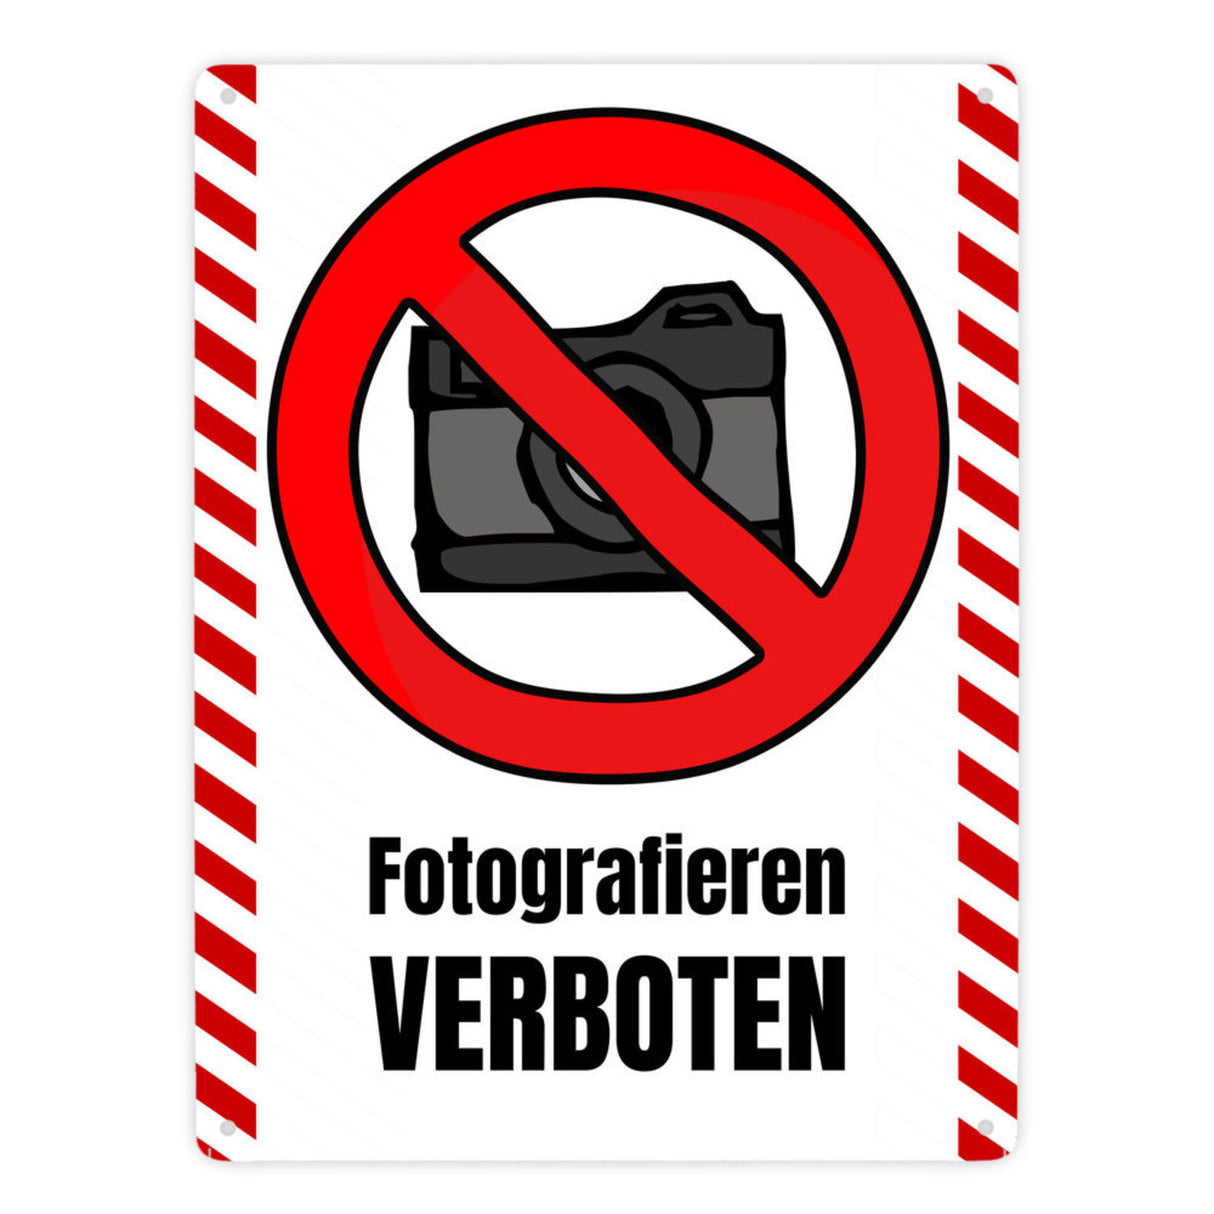 Fotografieren verboten Verbotsschild im Comic-Stil